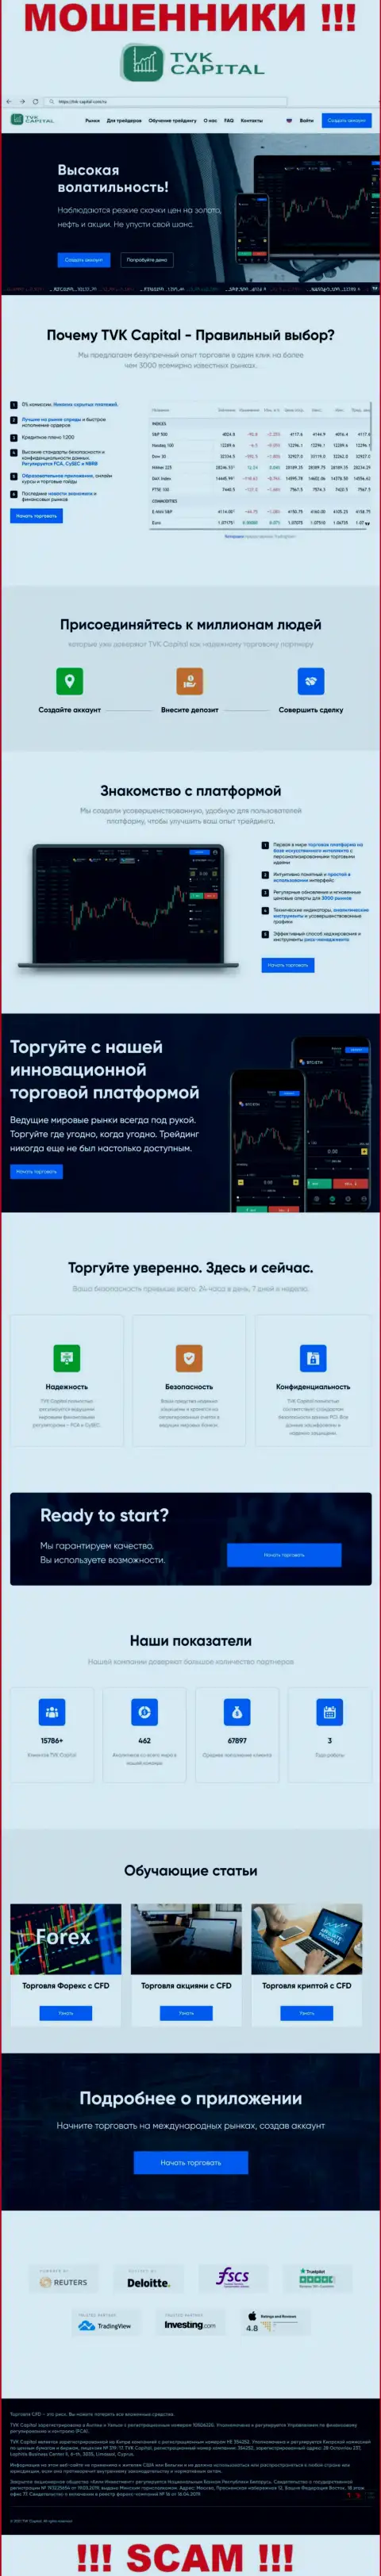 ТВККапитал Ком - онлайн-ресурс организации TVK Capital, типичная страница мошенников